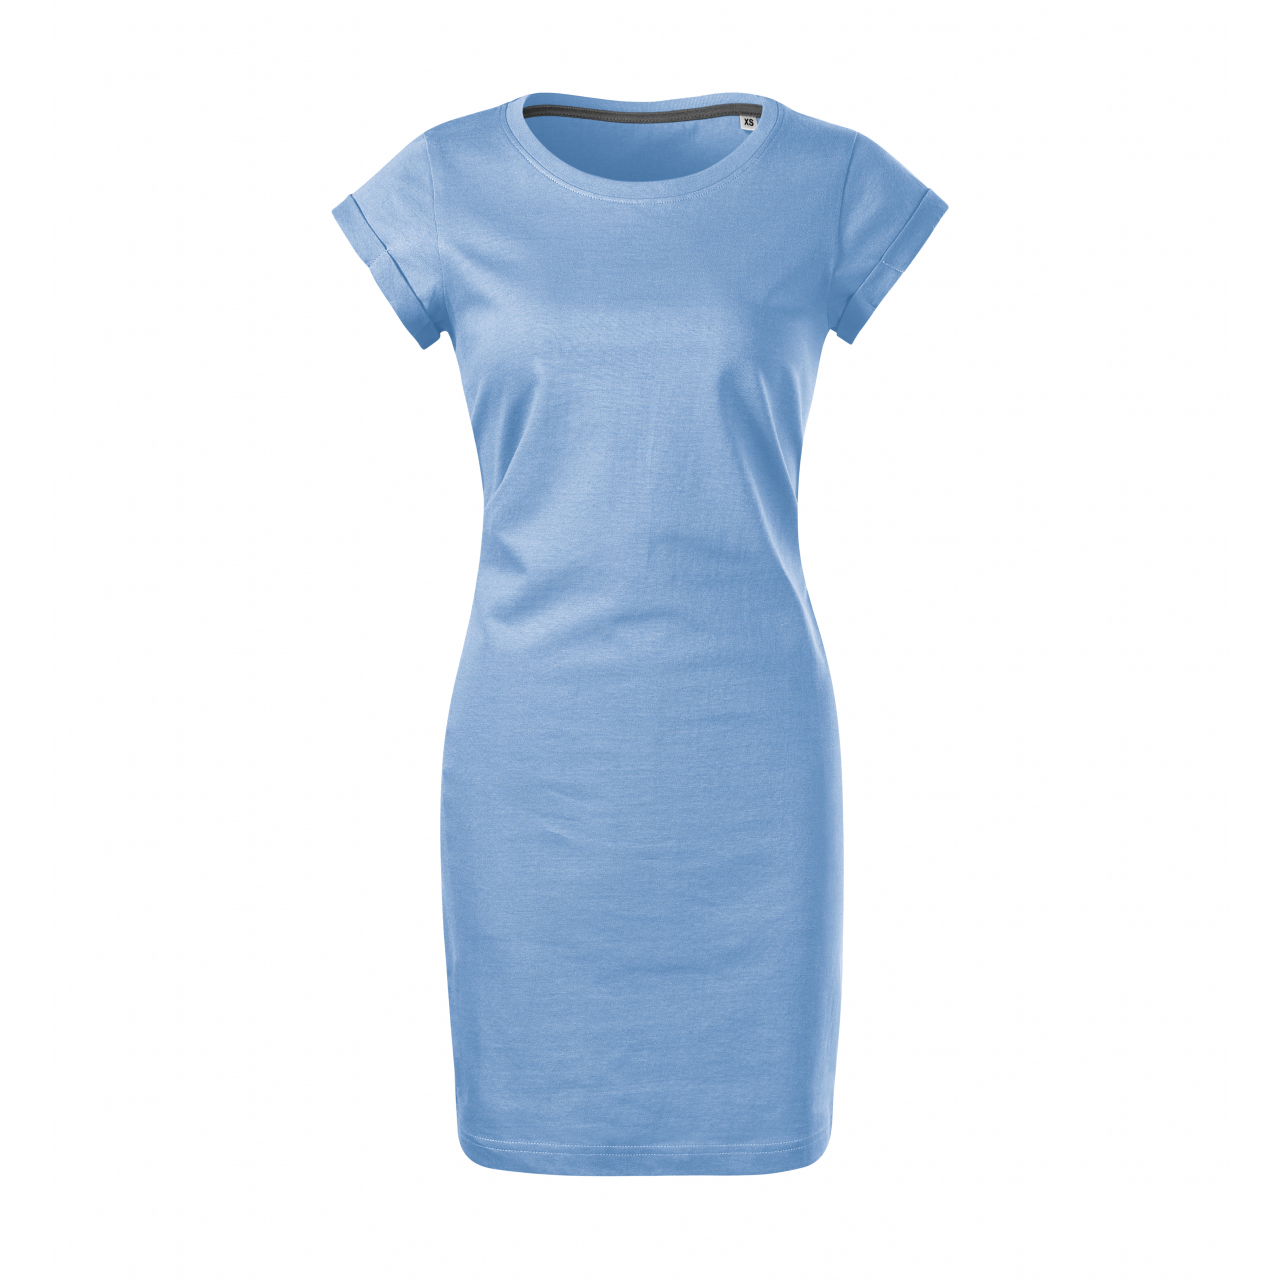 Šaty dámské Malfini Freedom - světle modré, XS